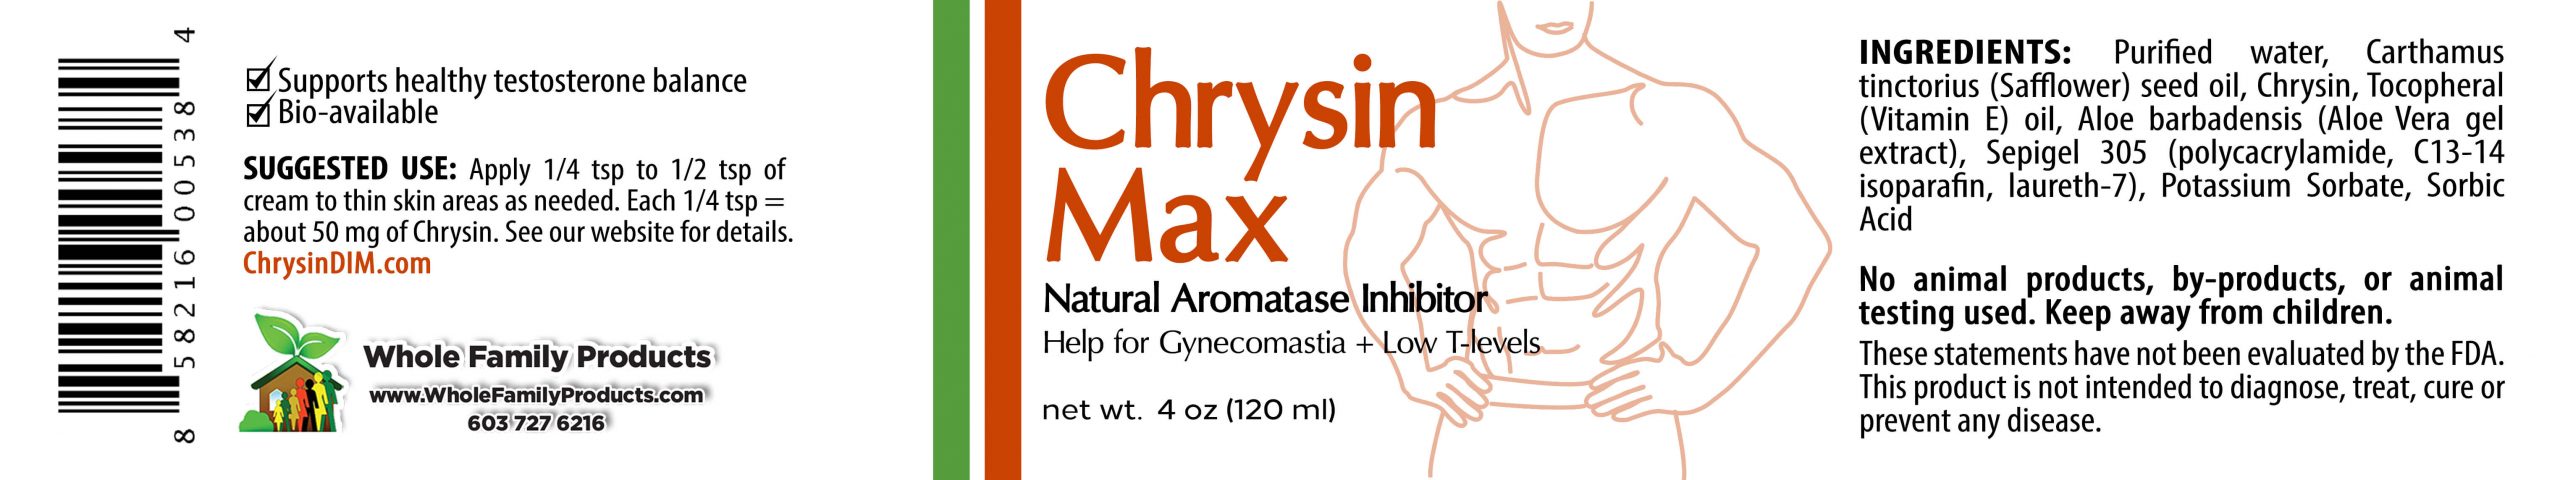 Chrysin Max 4oz Jar Label